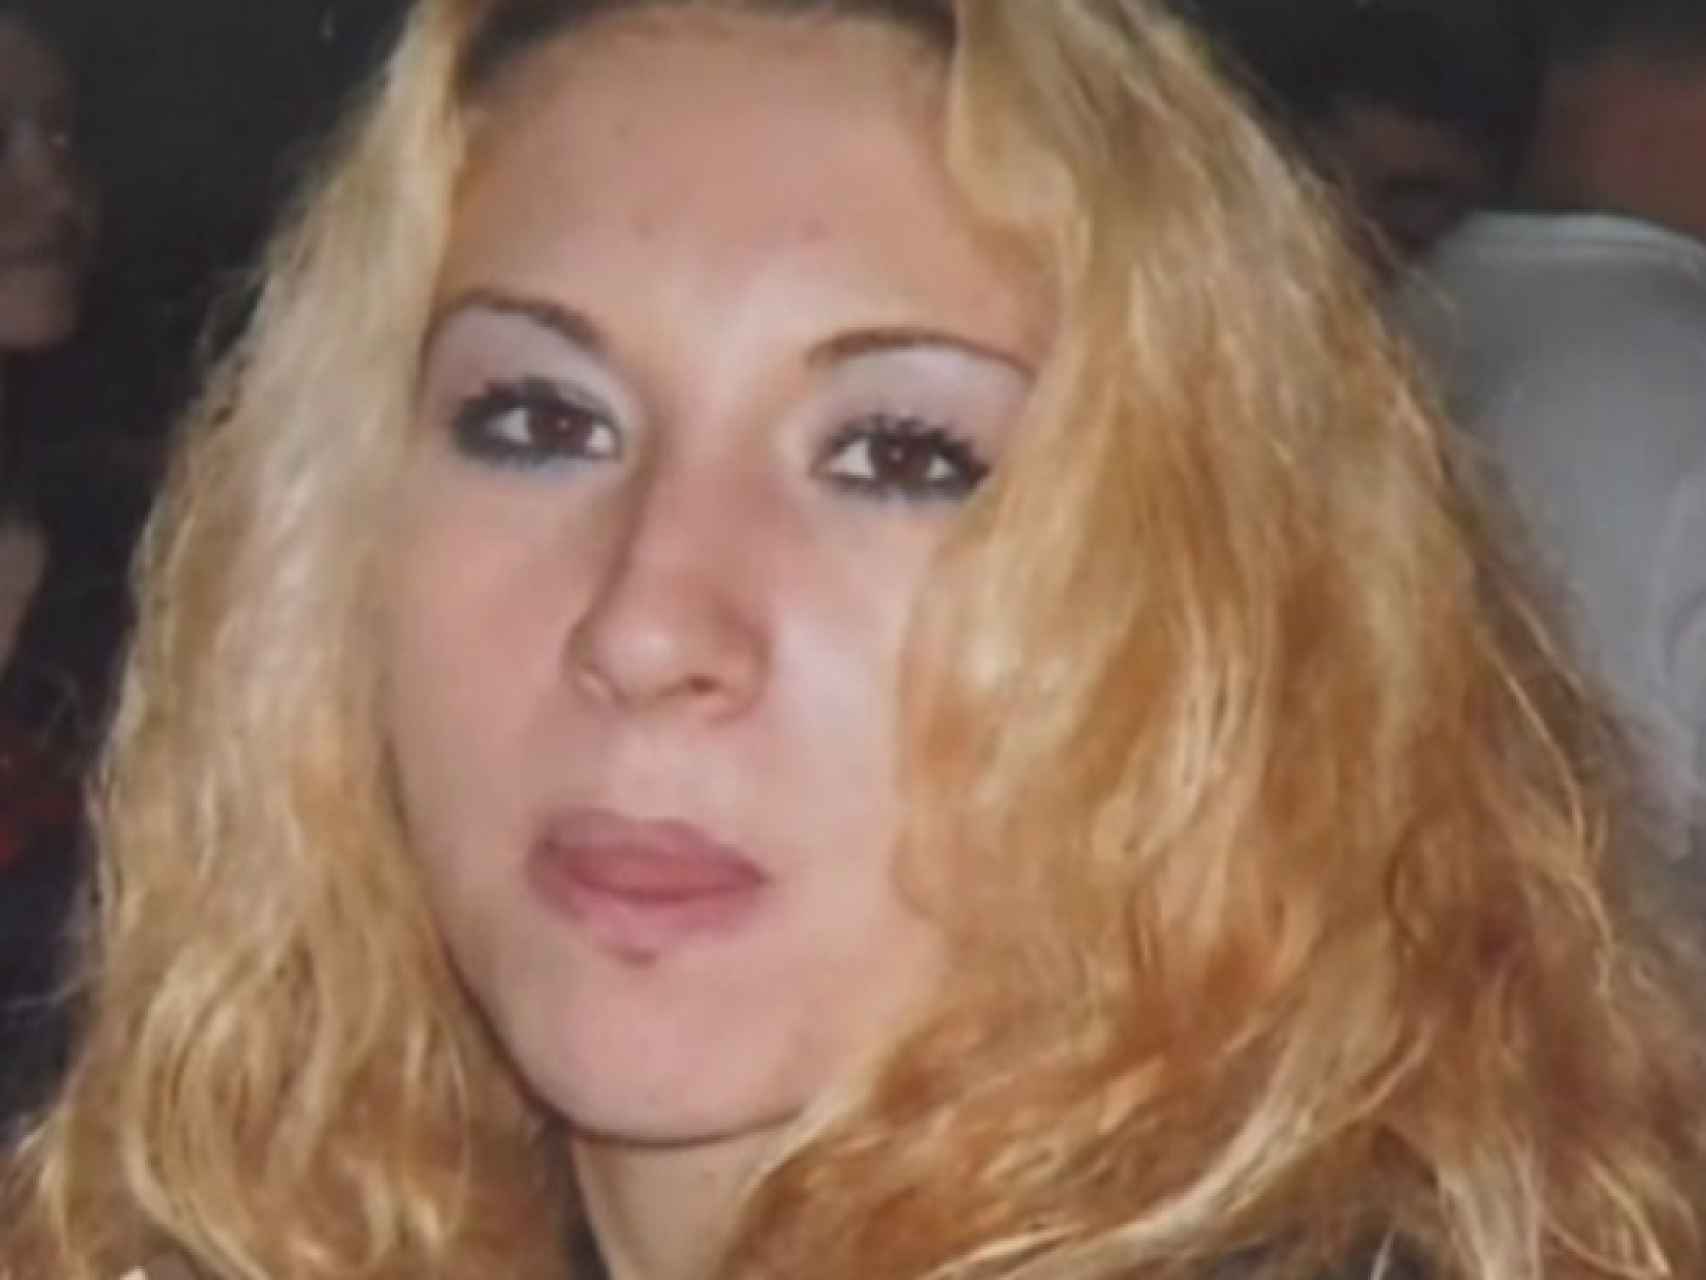 Daniela Gabriela Mihalcea, rumana de 23 años, fue descuartizada en Lleida 2011